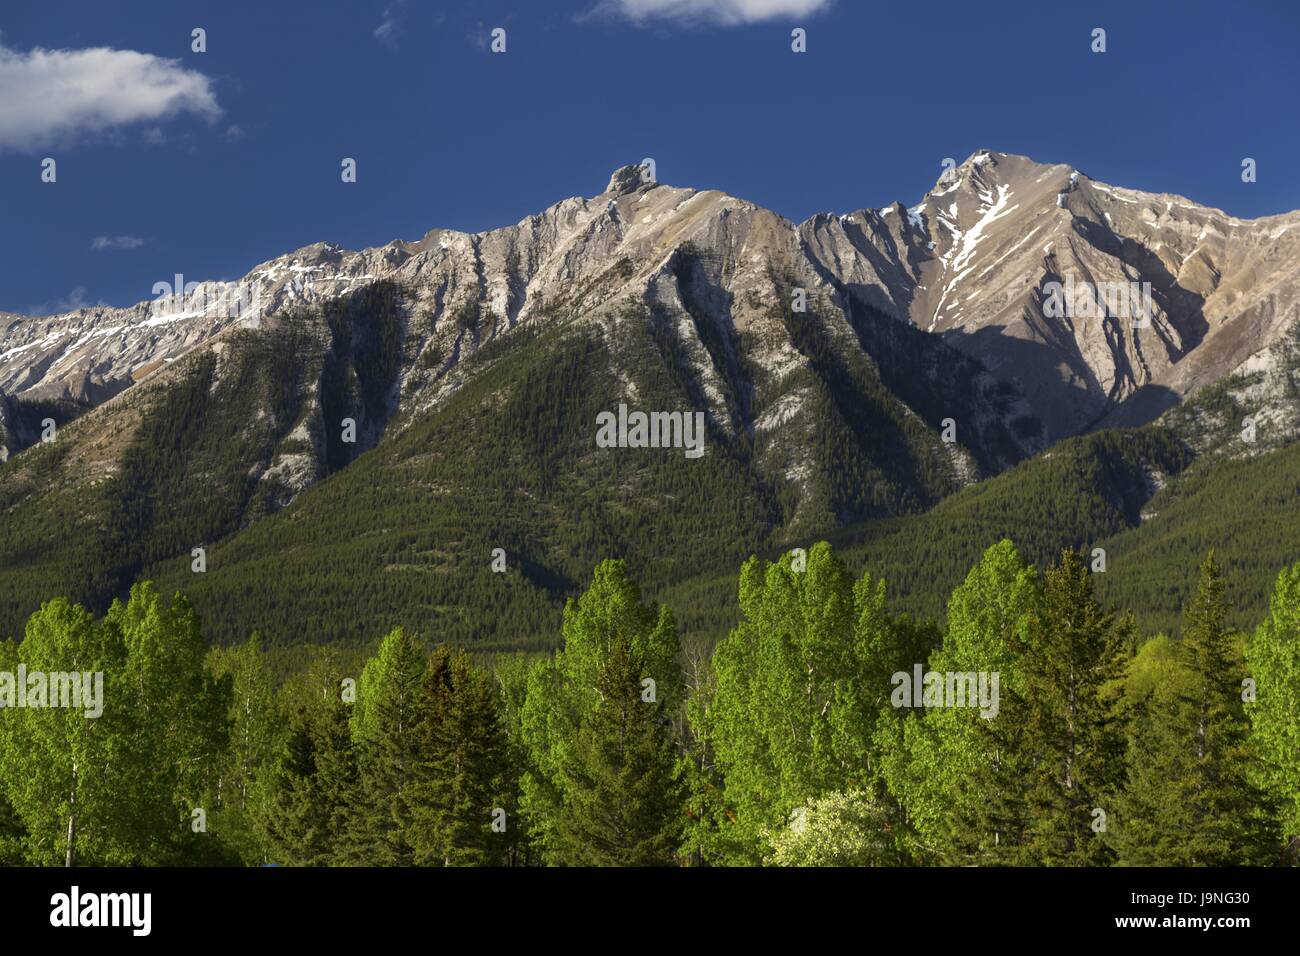 Canmore Alberta Foothills Skyline mit Rocky Mountain Peak und Green Forest Slope. Malerische Springtime Landscape Canadian Rockies, Banff National Park Stockfoto